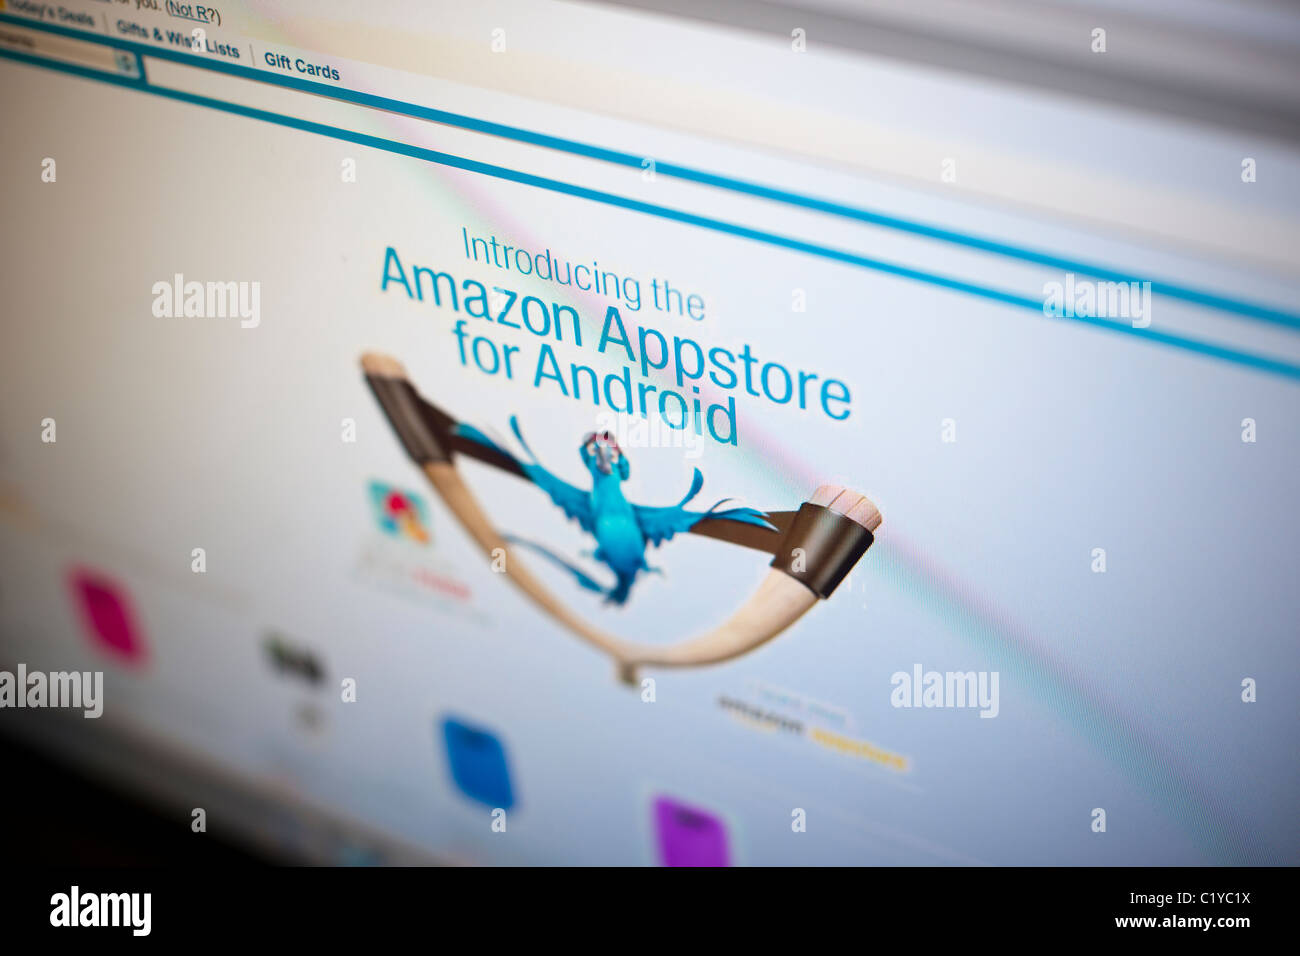 Sito web di Amazon promuove il nuovo sistema operativo Android Appstore Foto Stock